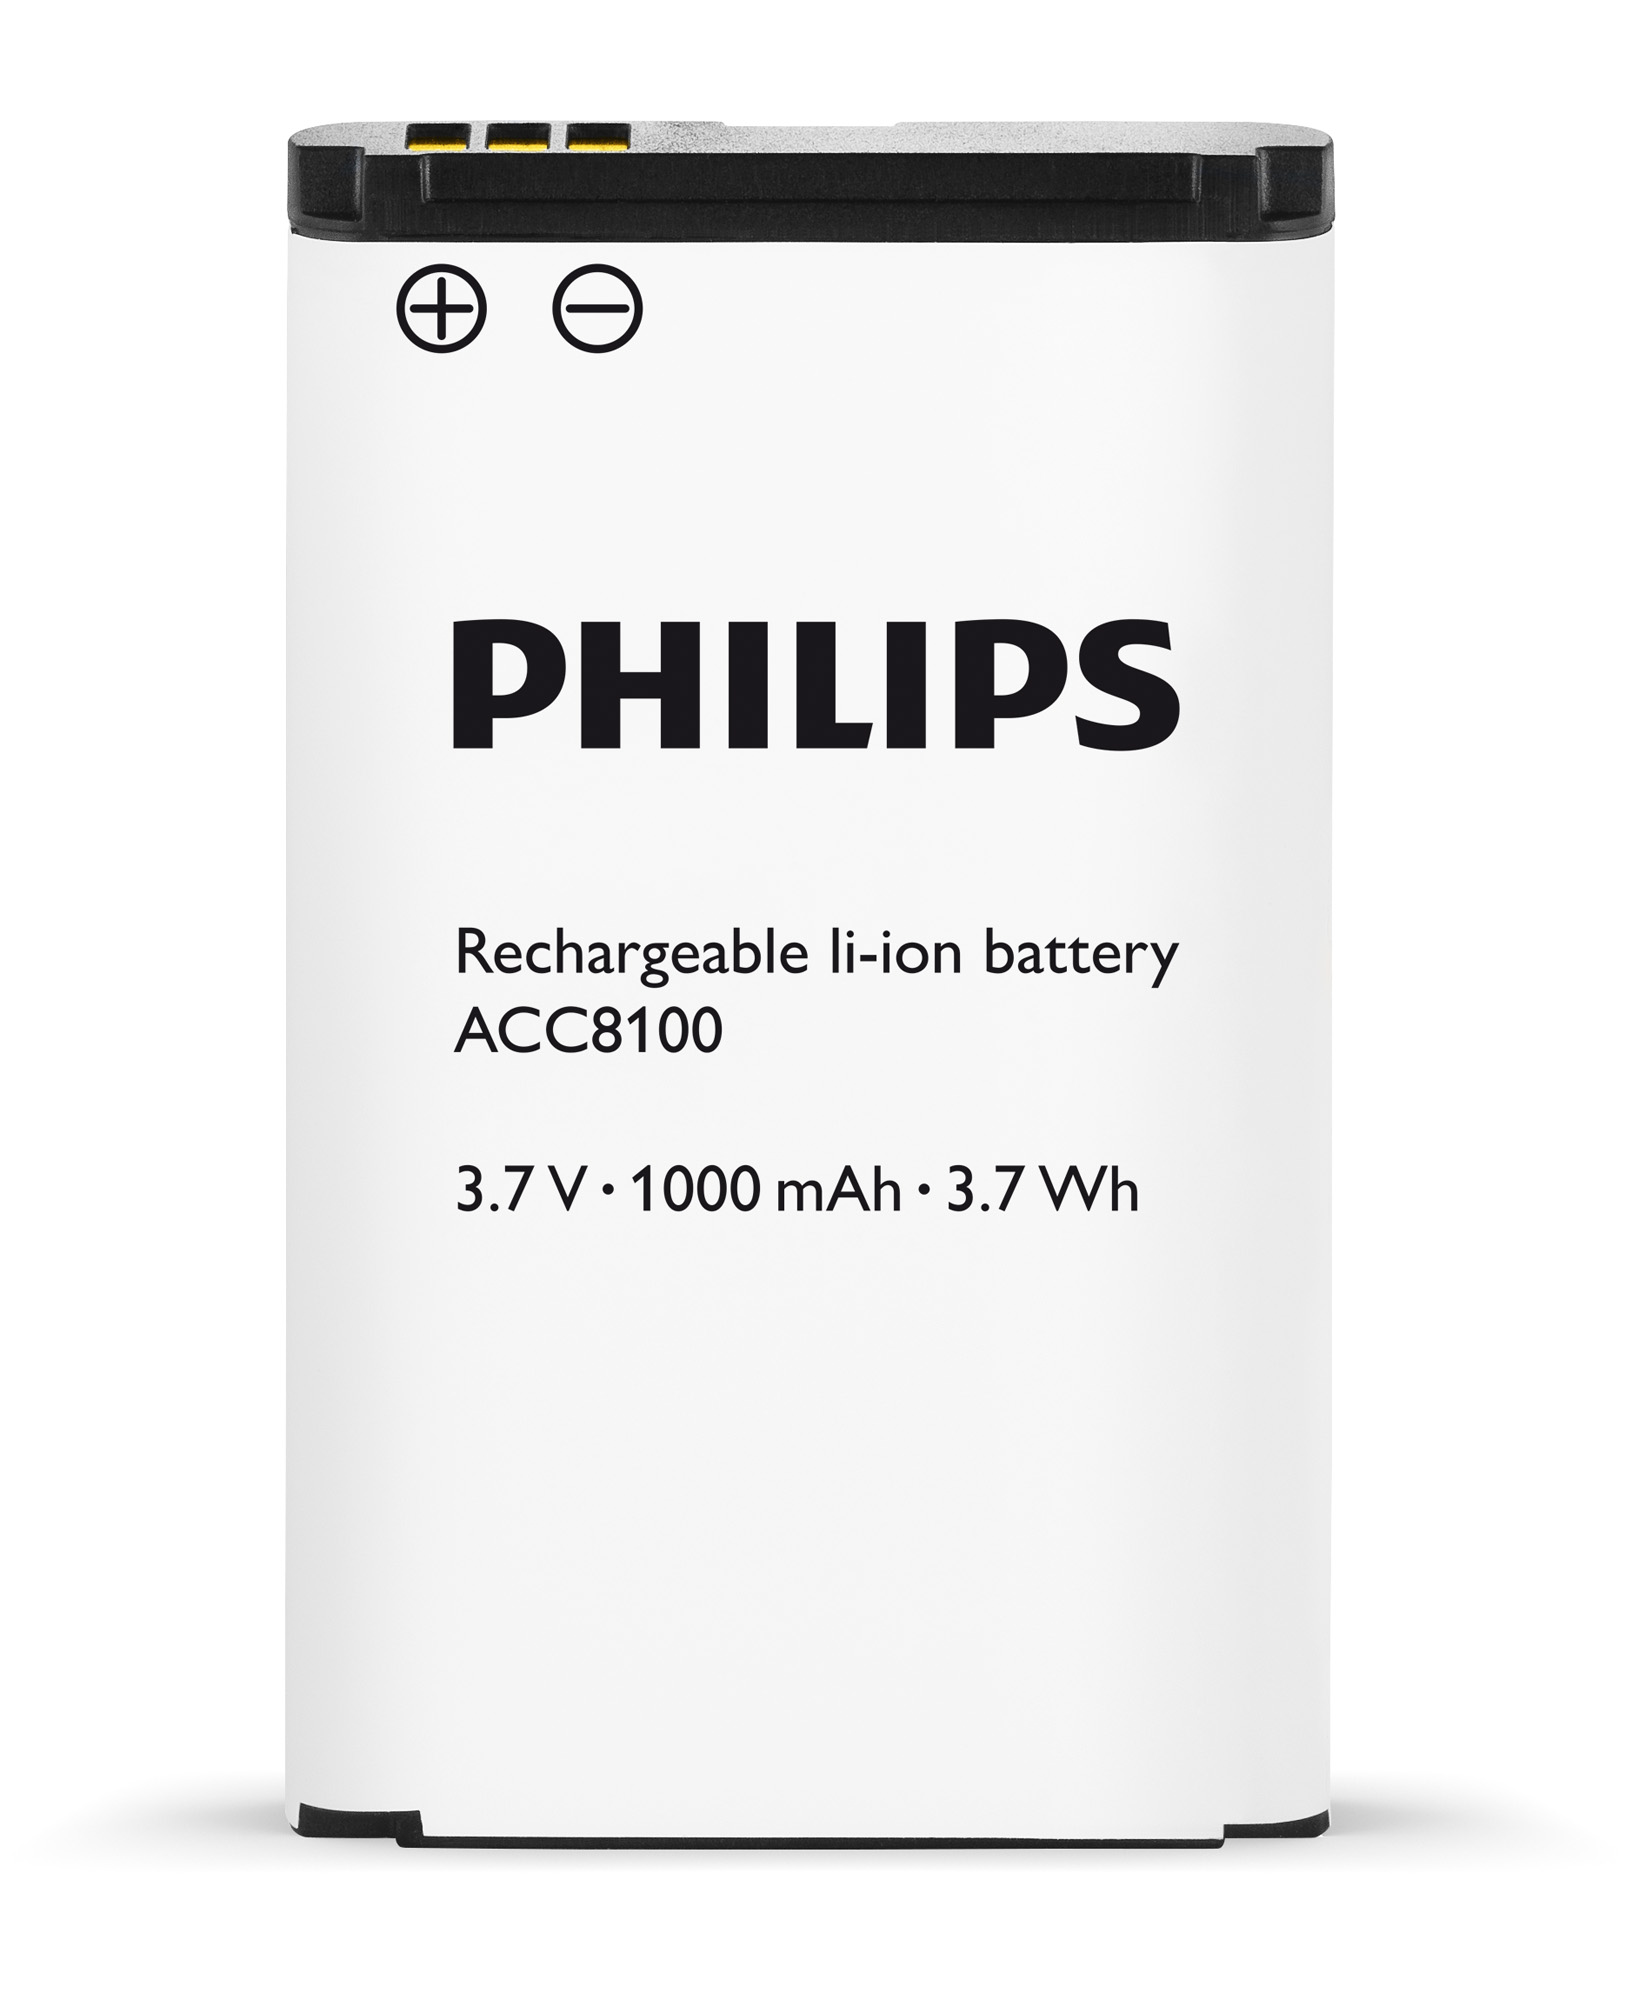 Купить батарею филипс